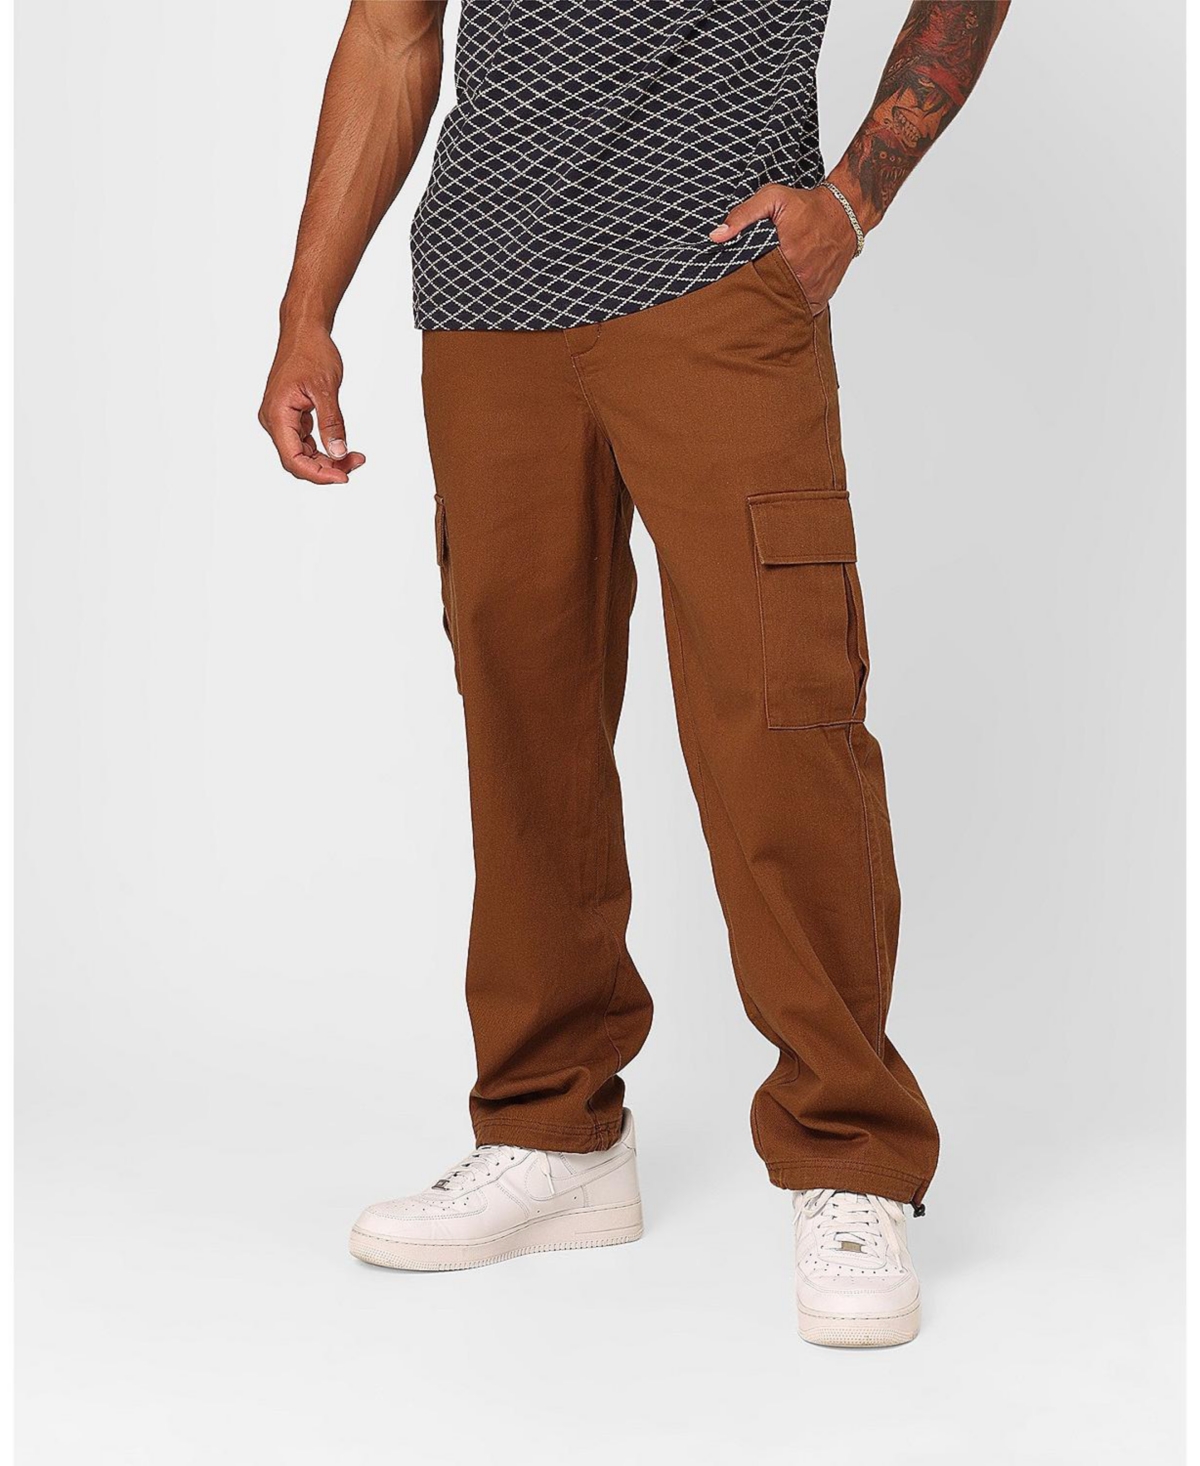 Cartney Men's Cargo Pants - Brown